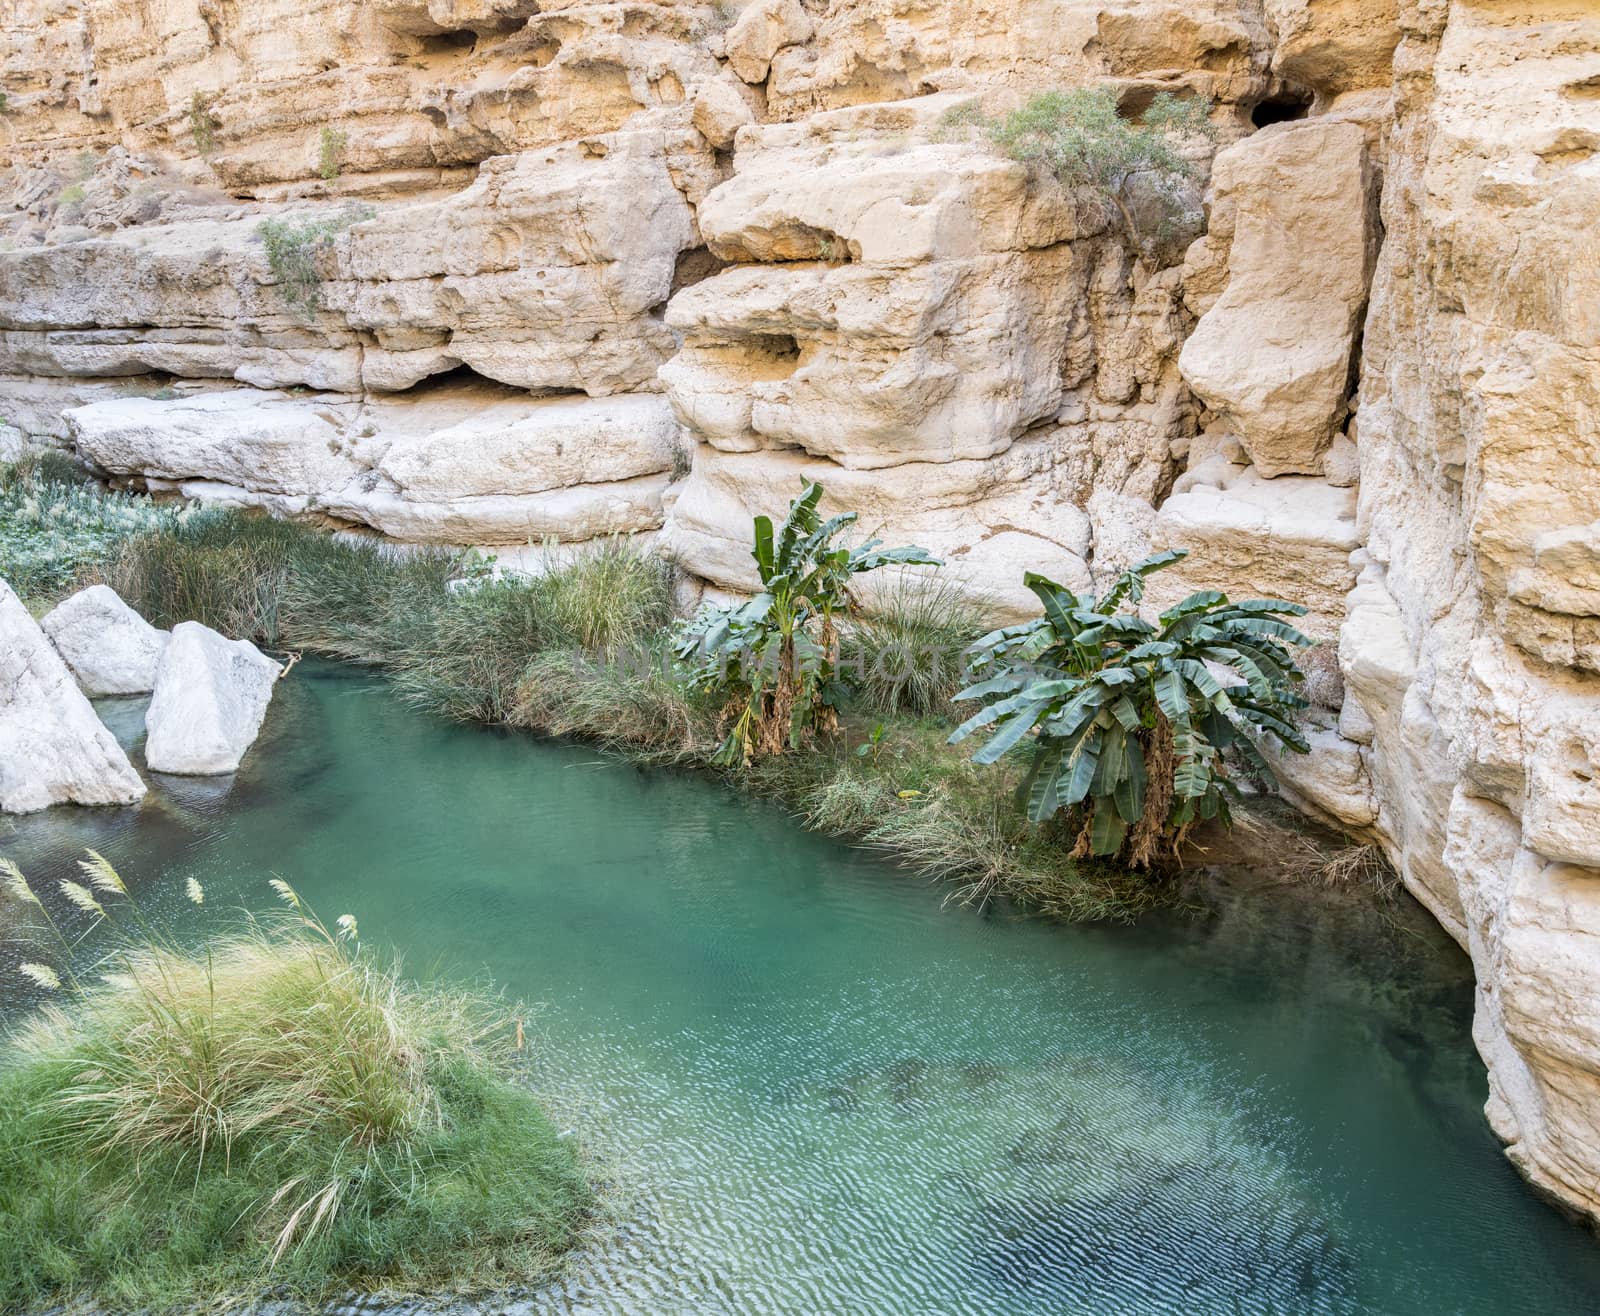 River of Wadi shab, Oman by GABIS